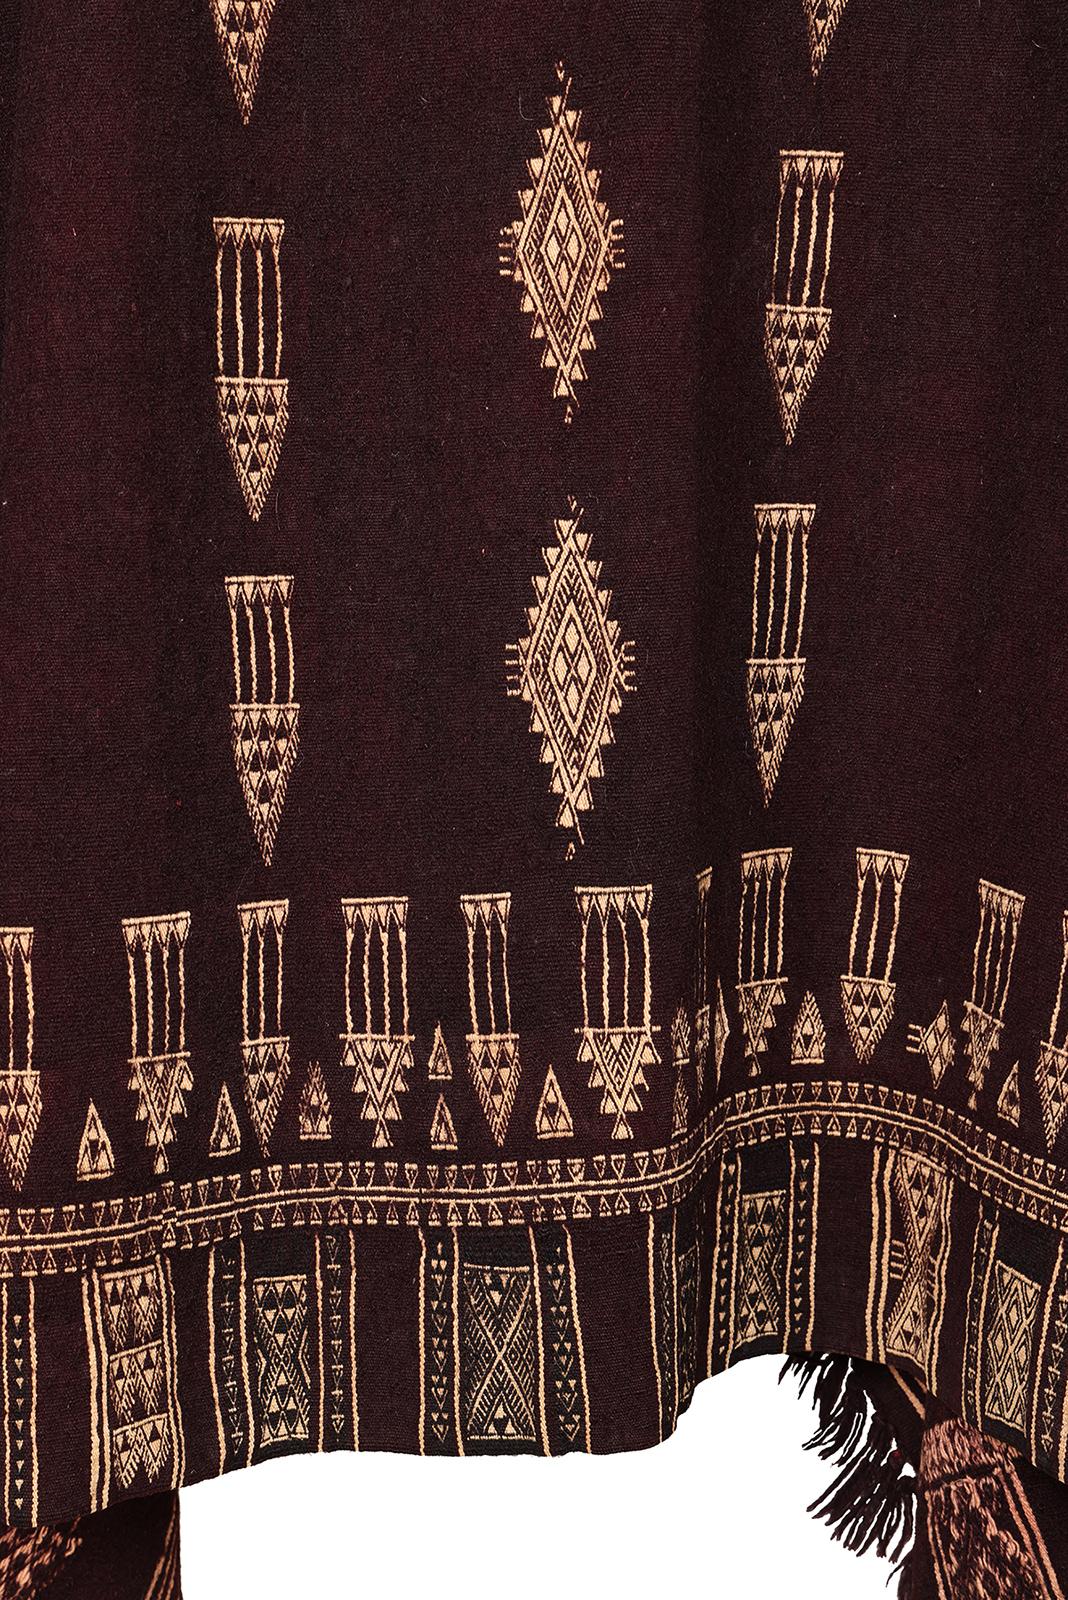 Frauendeckel, Bakhnouk
Berbervolk, Tunesien
Anfang des 20. Jahrhunderts
Wolle, Baumwolle, nach dem Weben gefärbt
Ergänzende Musterung
45